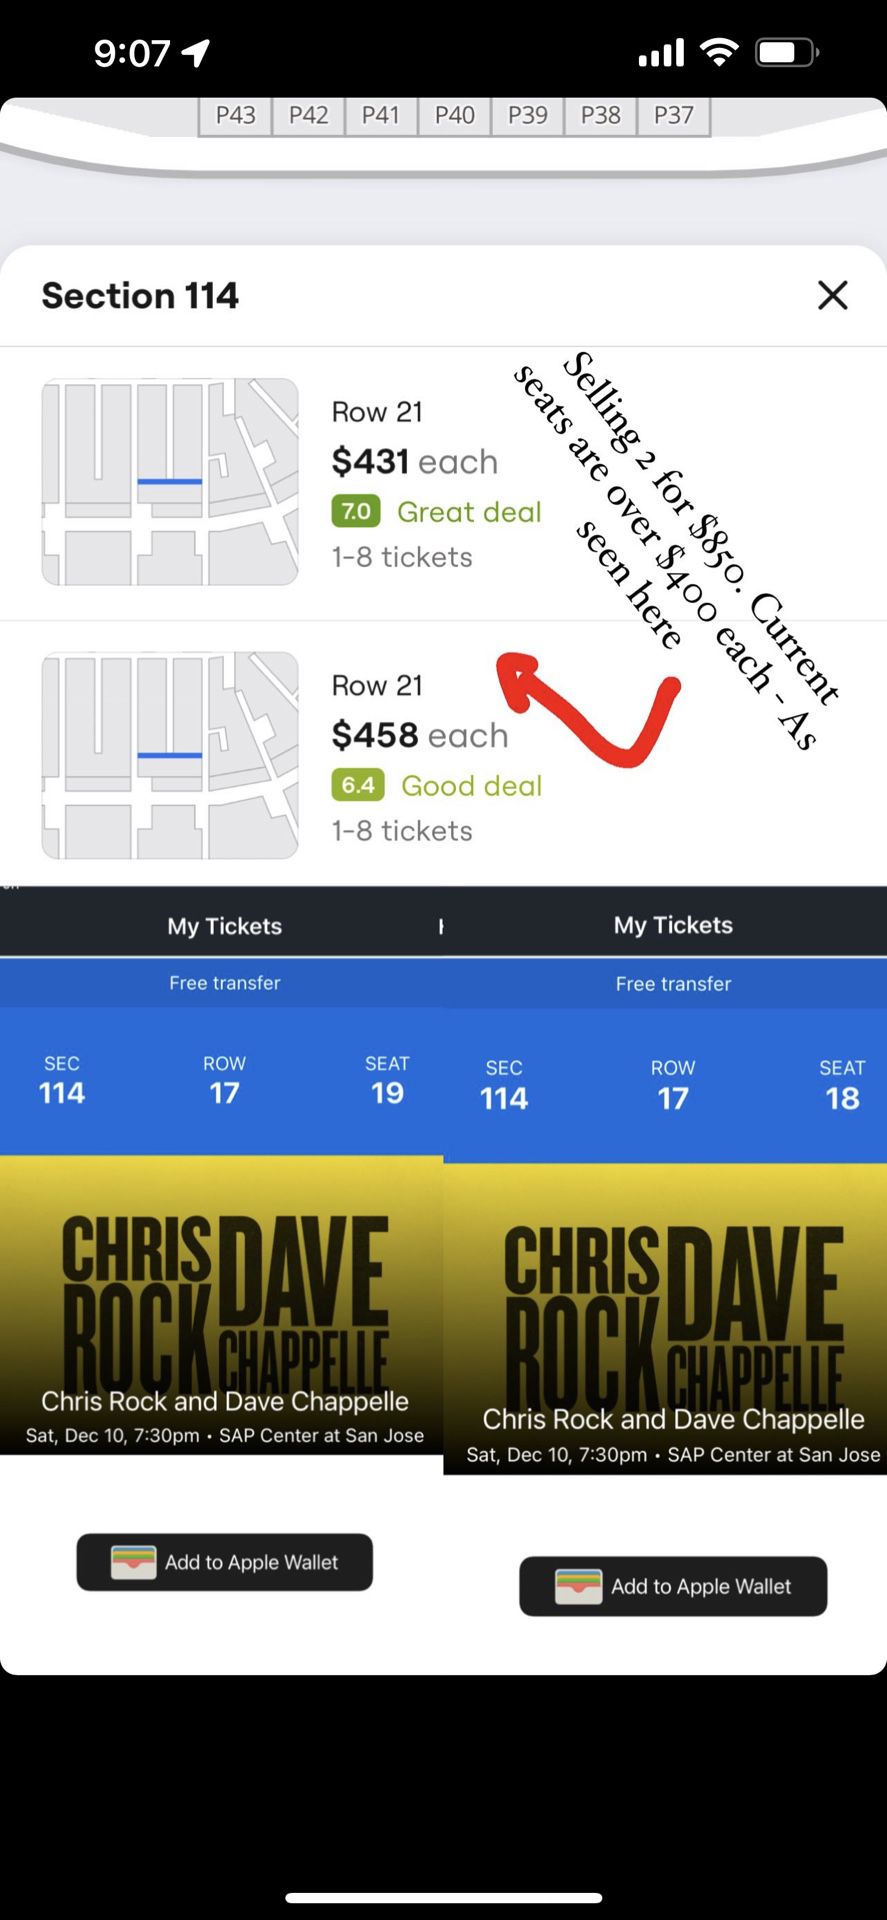 Dave Chappelle & Chris Rock Tickets @ San Jose SAP Center - Dec. 10th